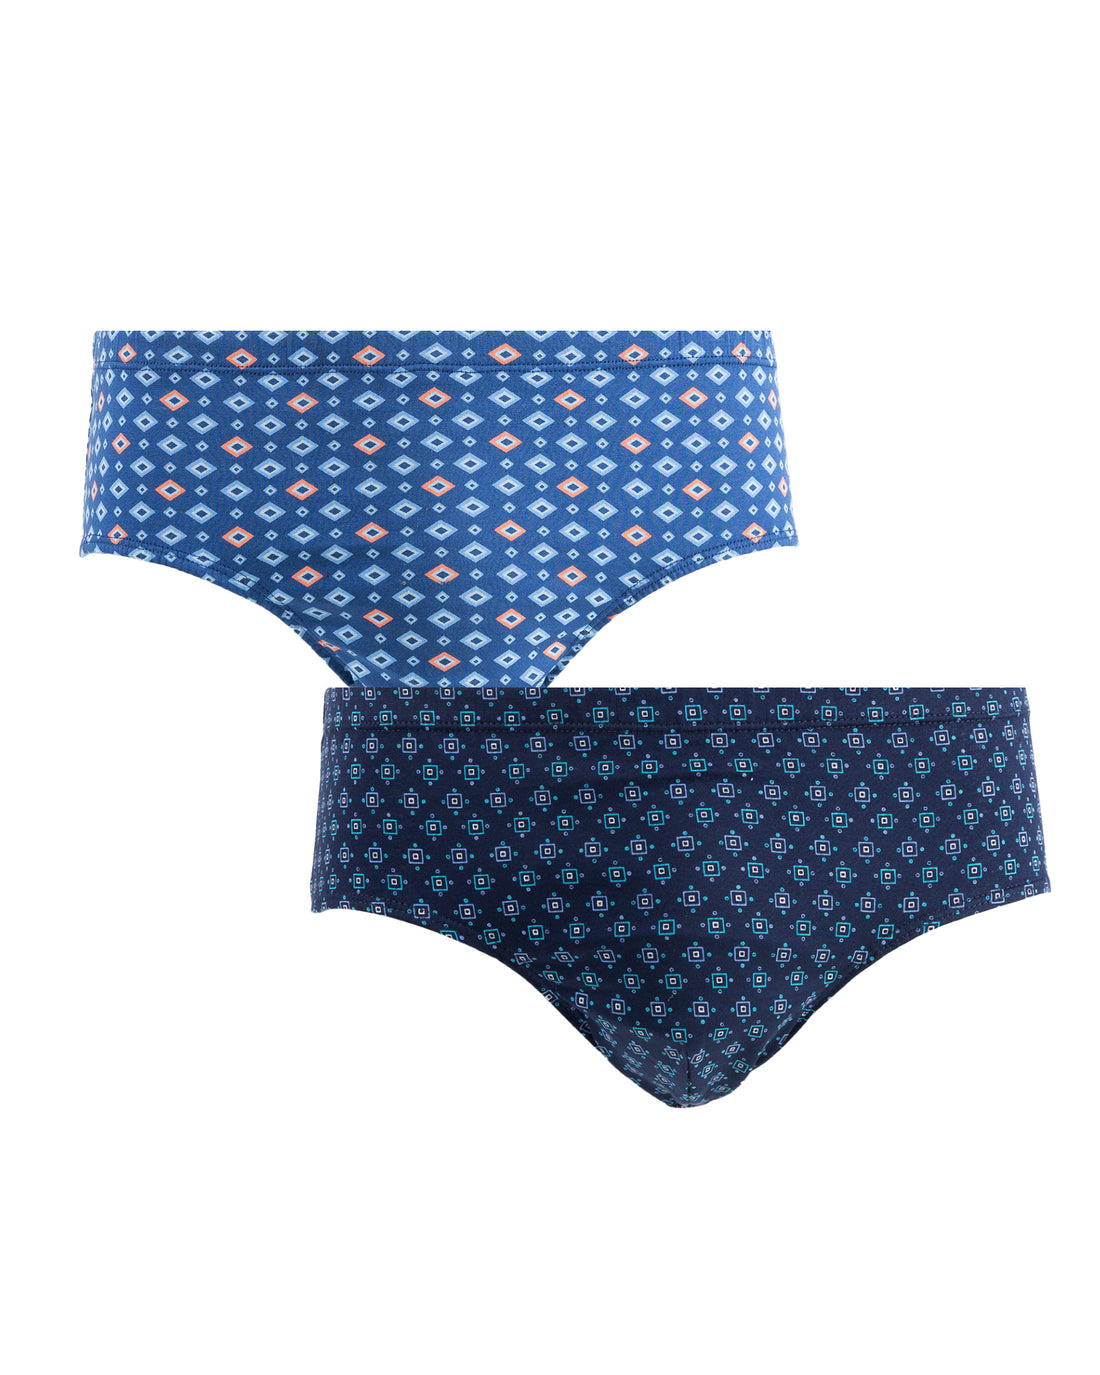 Découvrez notre nouvelle collection - Mariner underwear